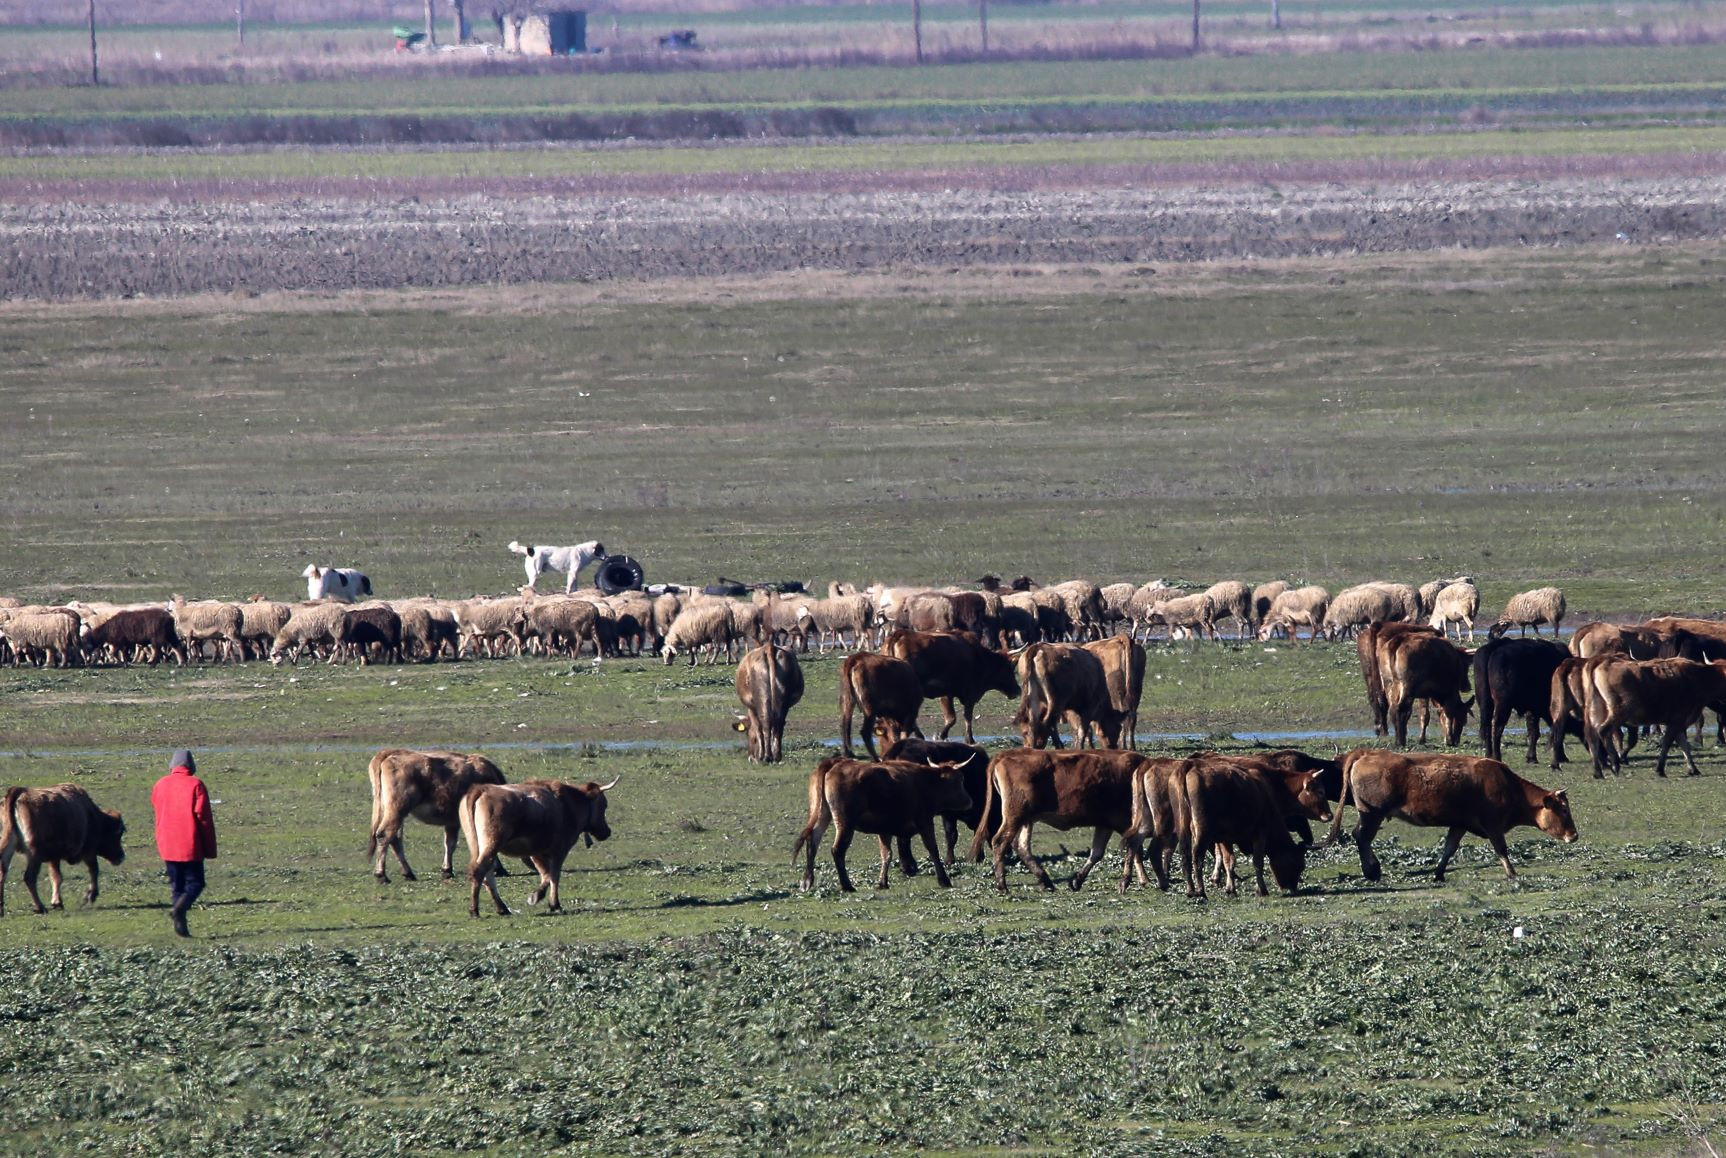 Σε απελπισία οι κτηνοτρόφοι περιμένουν κυβερνητική παρέμβαση